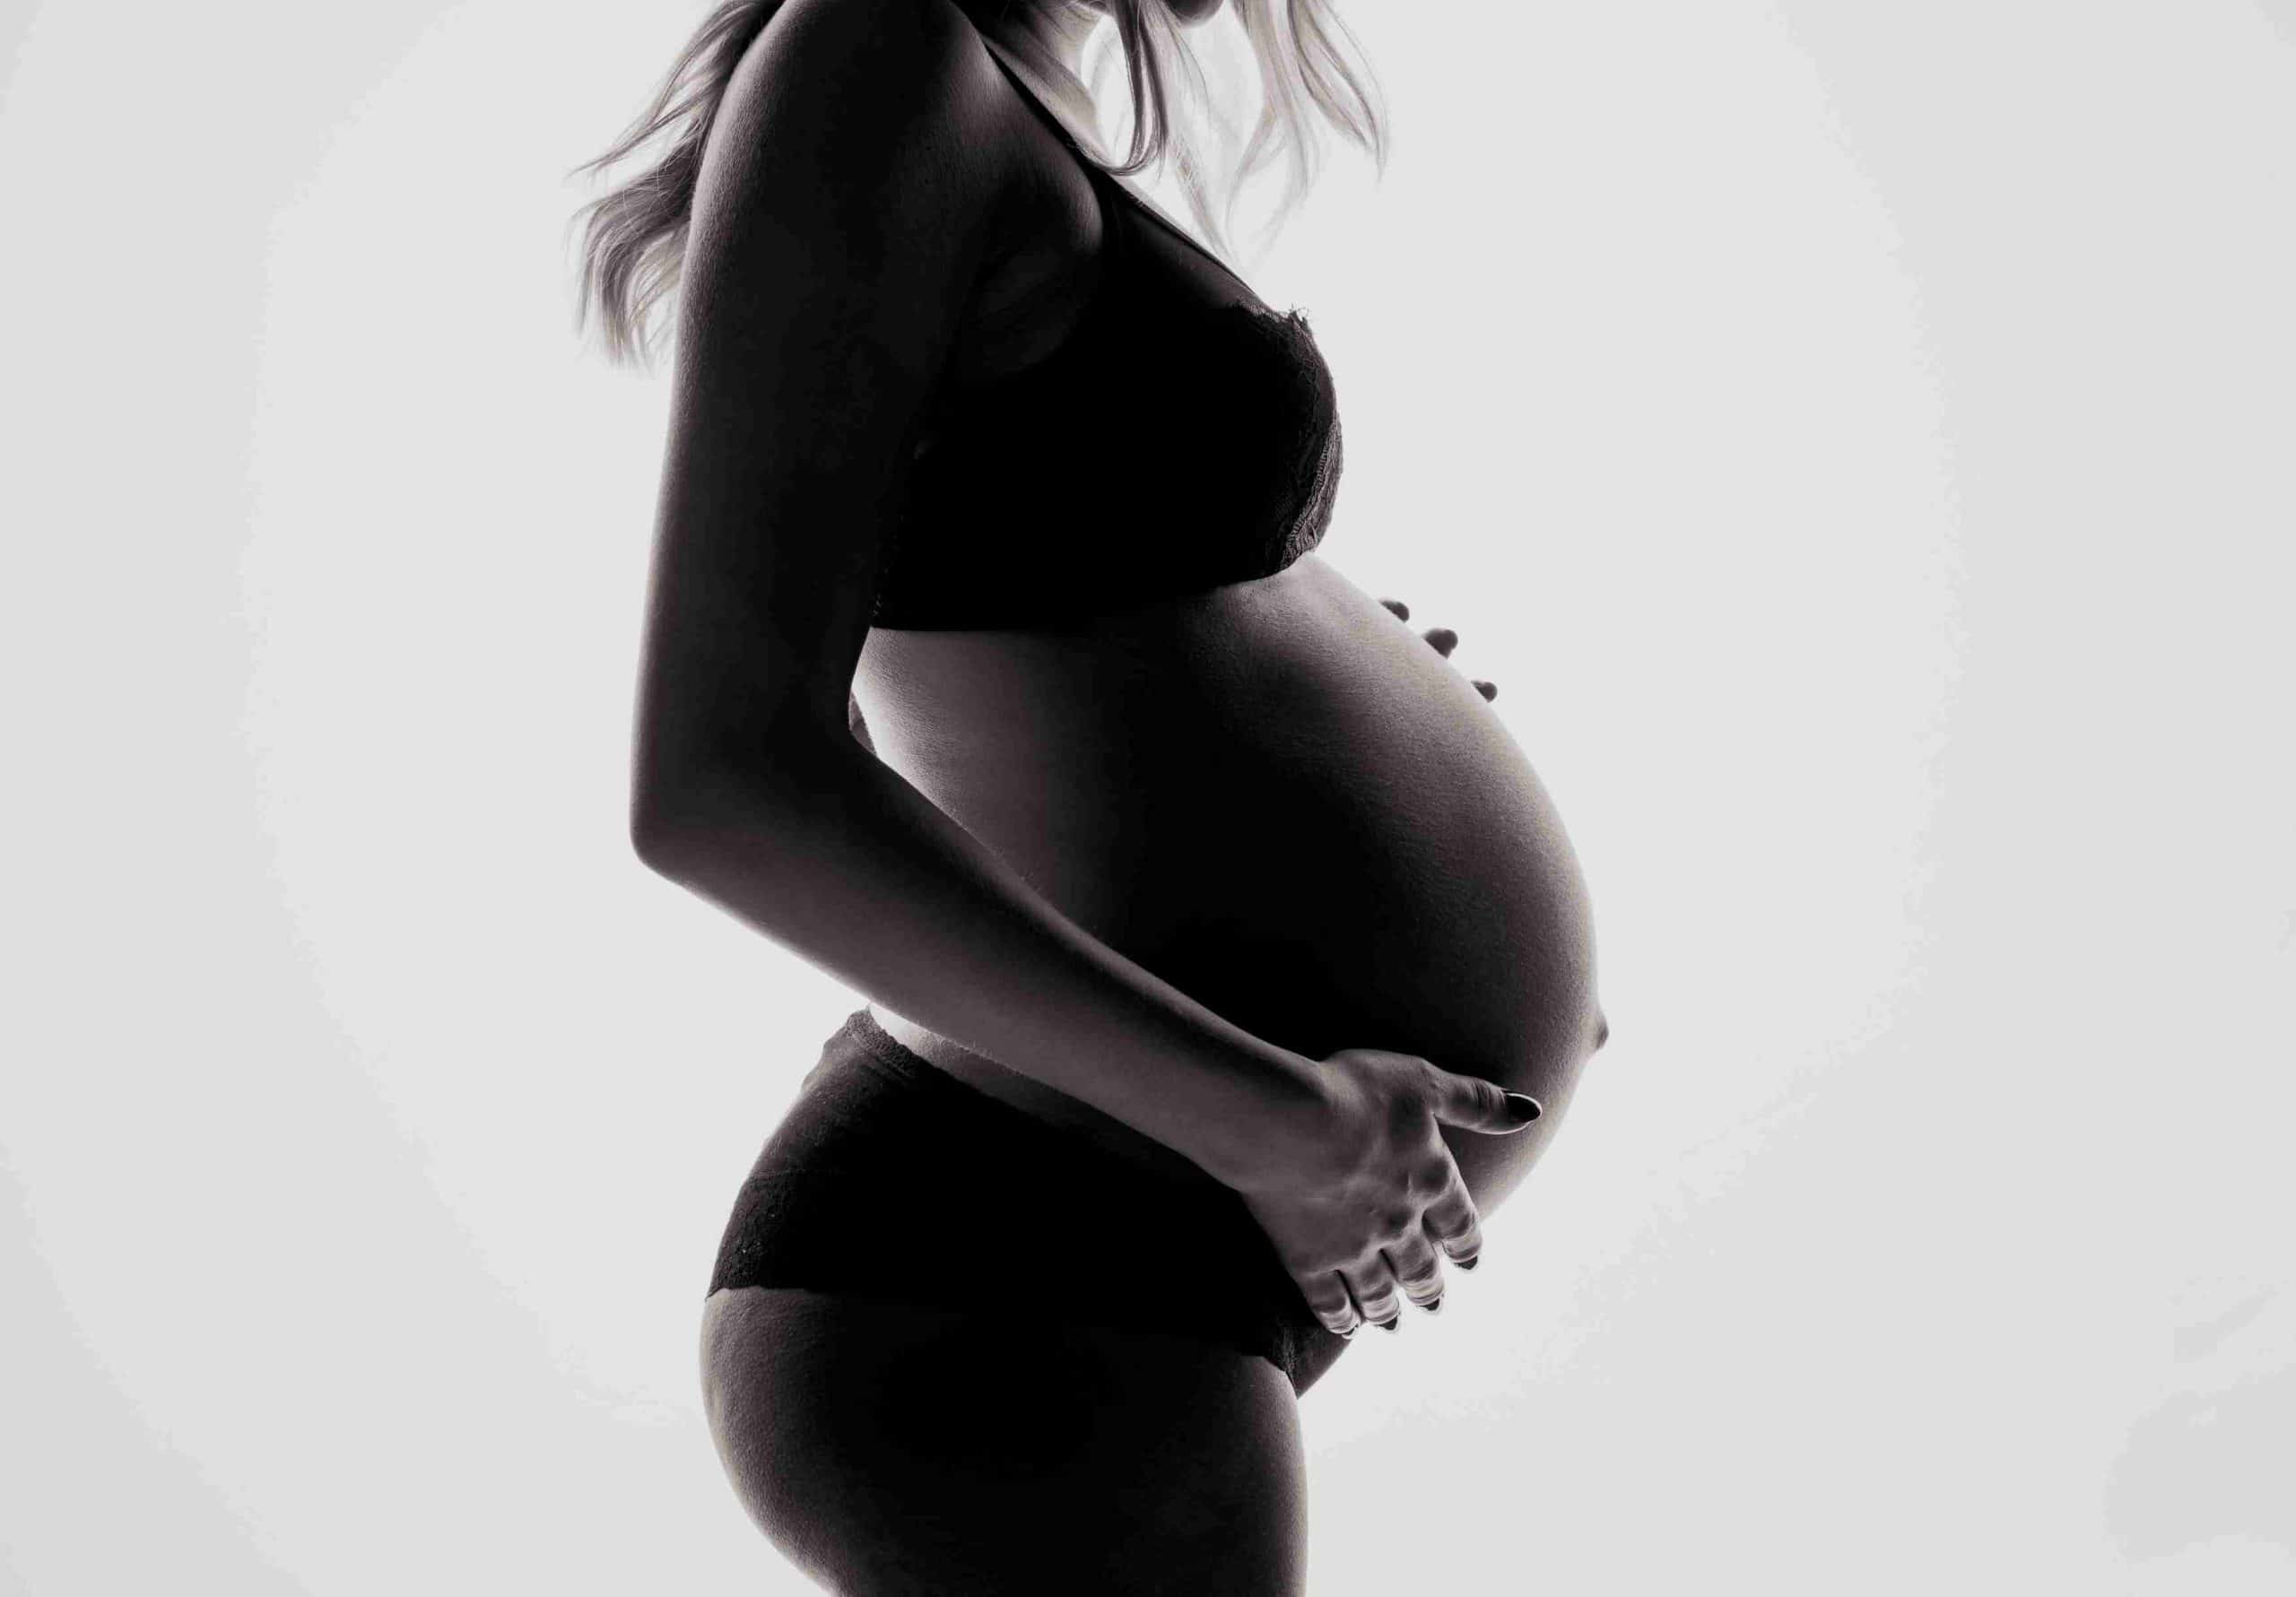 Κατά τη διάρκεια του πρώτου τριμήνου την εγκυμοσύνης μπορείτε να δοκιμάσετε τα πάντα καθώς δεν συντρέχει κανένας λόγος ανησυχίας για το καλά προστατευμένο σας μωράκι.